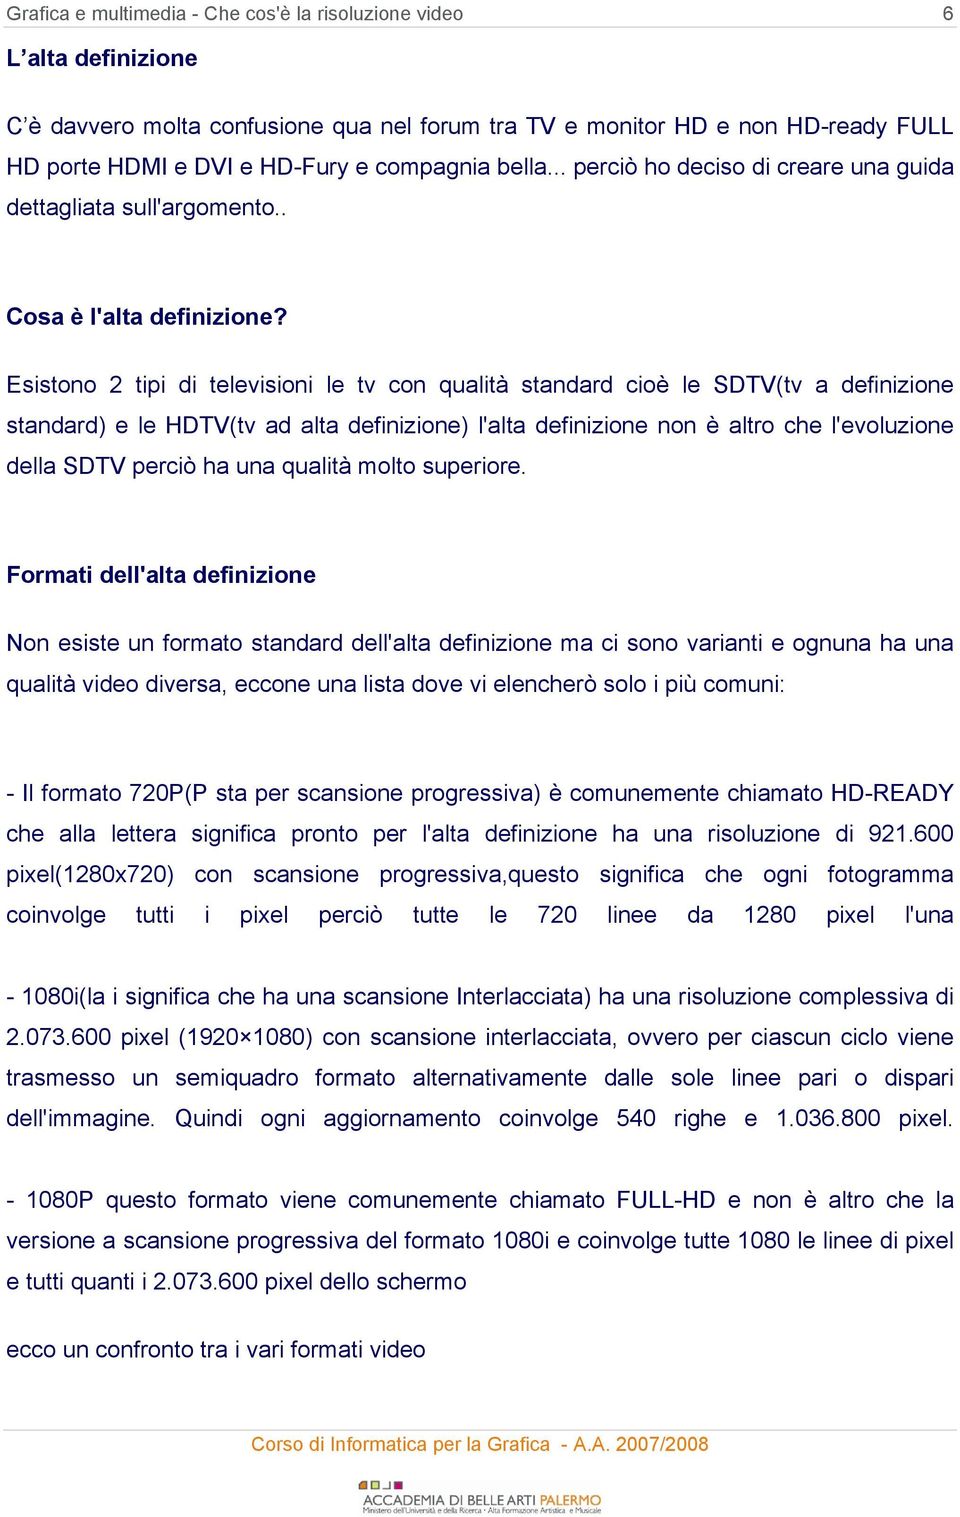 Esistono 2 tipi di televisioni le tv con qualità standard cioè le SDTV(tv a definizione standard) e le HDTV(tv ad alta definizione) l'alta definizione non è altro che l'evoluzione della SDTV perciò